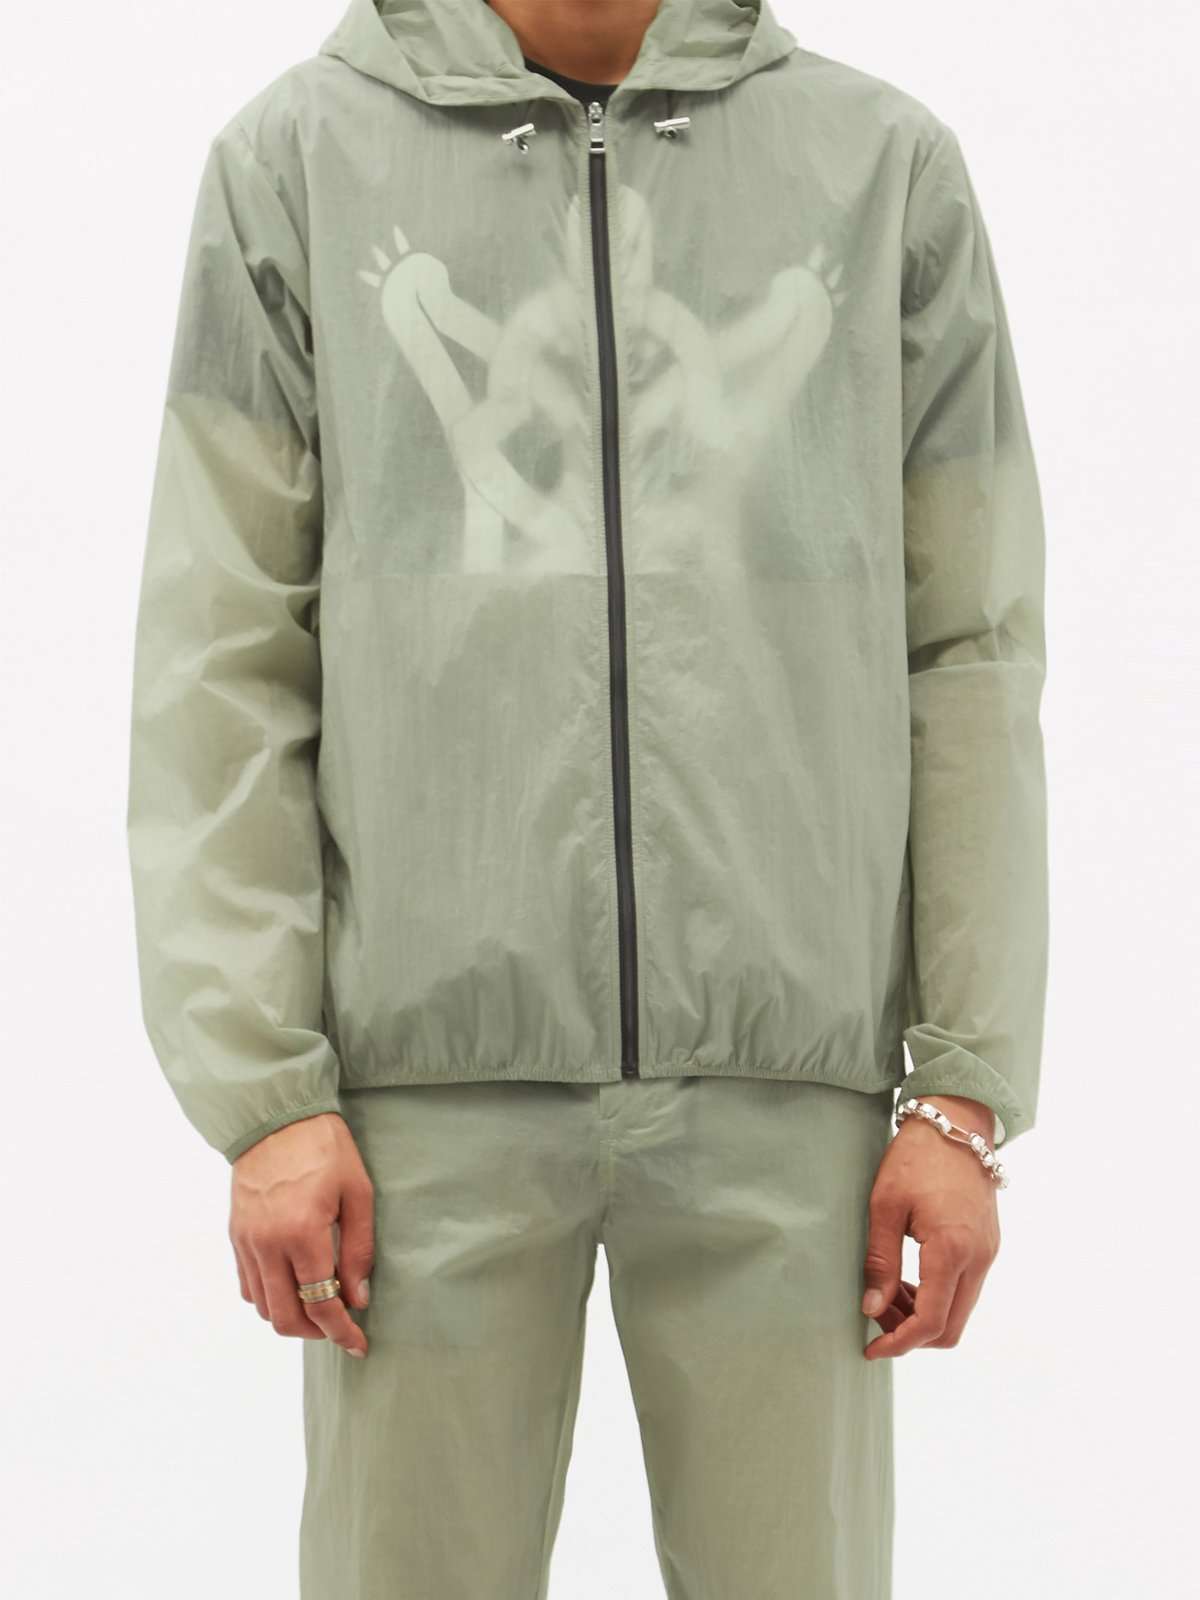 полупрозрачная куртка с капюшоном и принтом лягушки